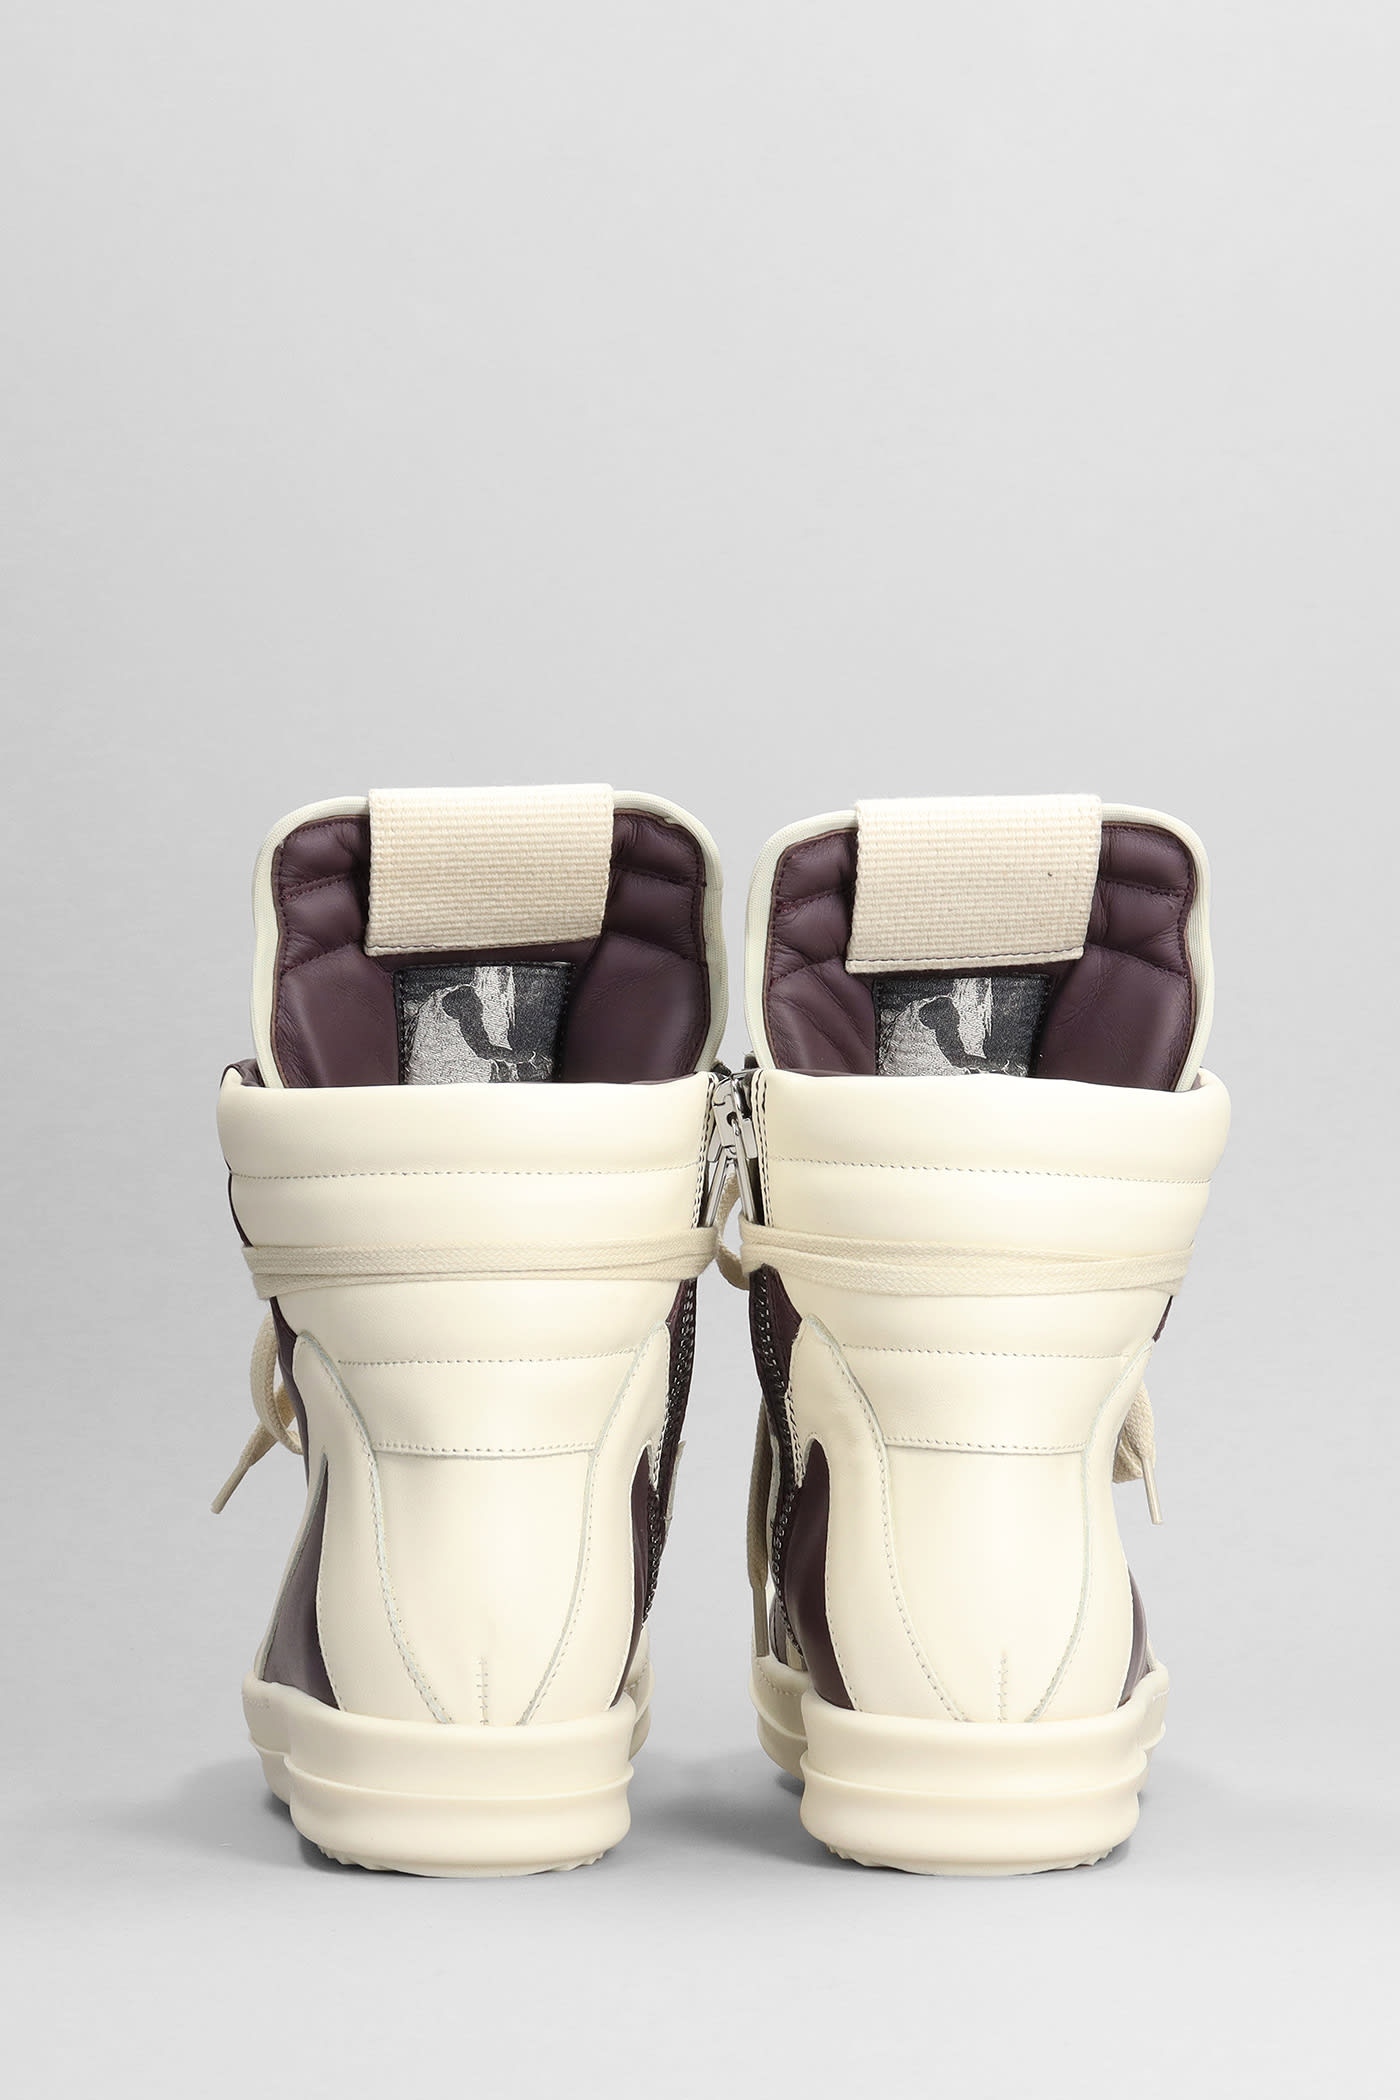 Shop Rick Owens Geobasket Sneakers In Viola Leather